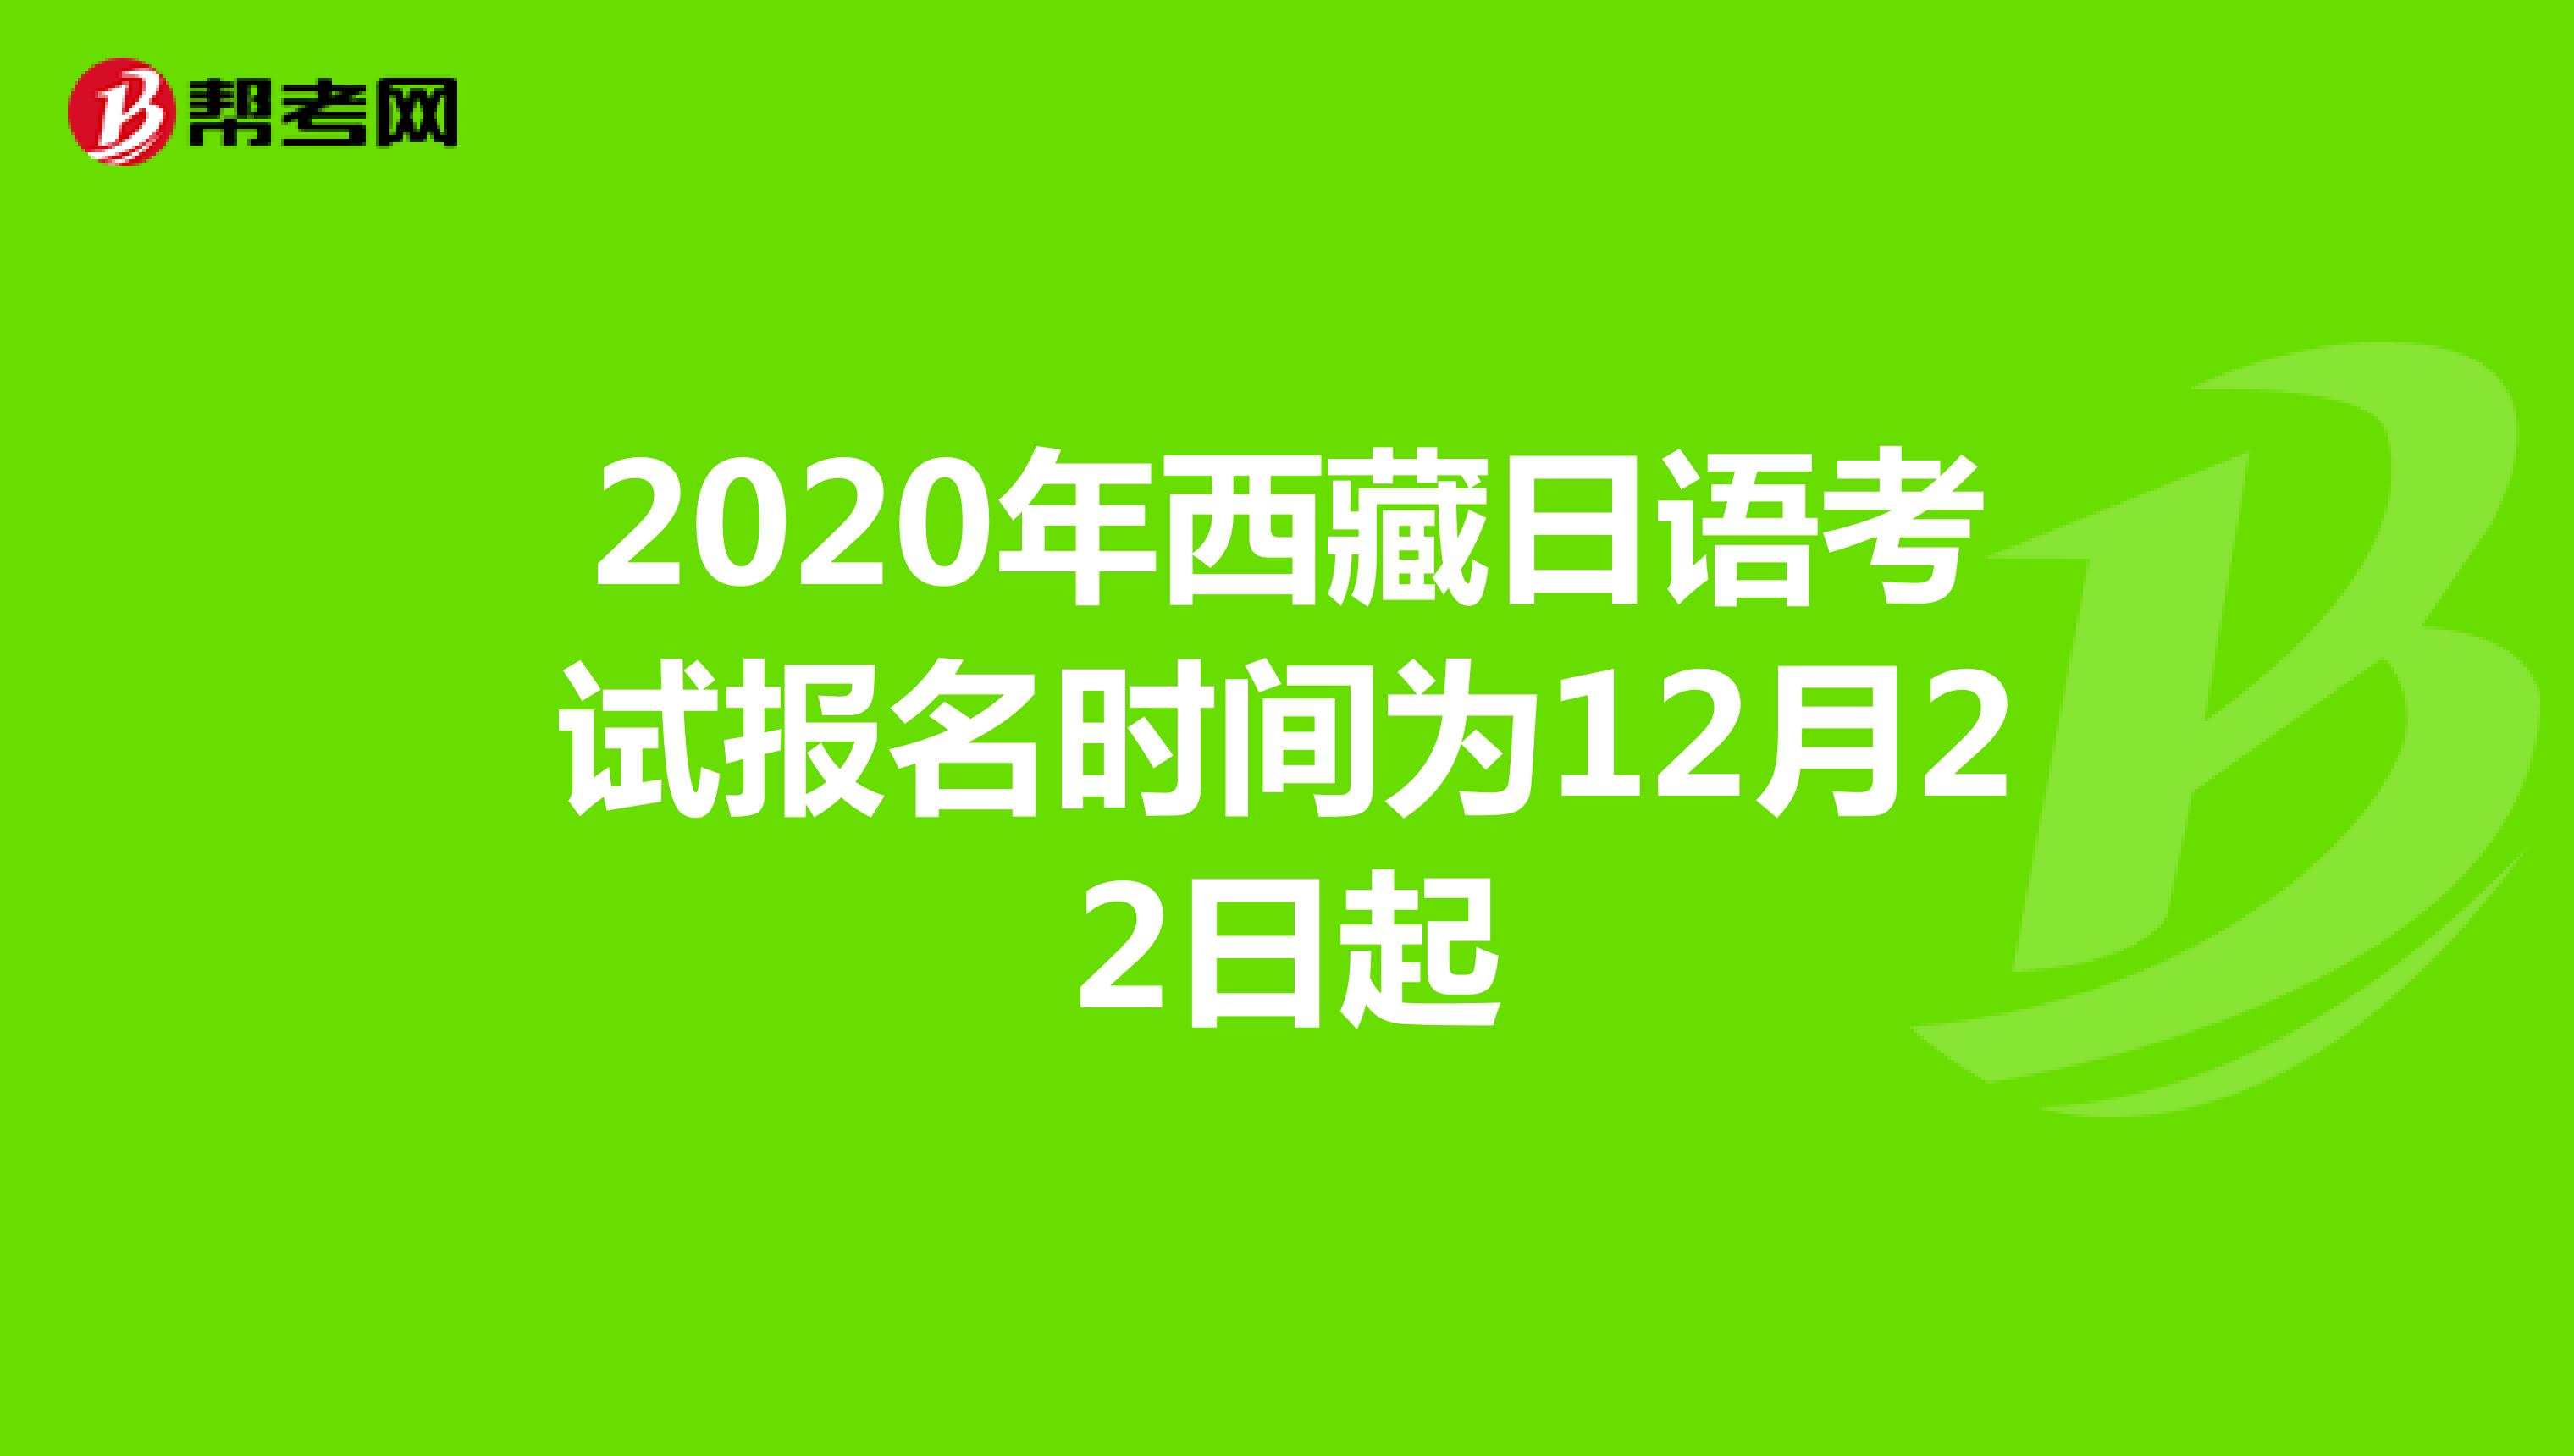 2020年西藏日语考试报名时间为12月22日起